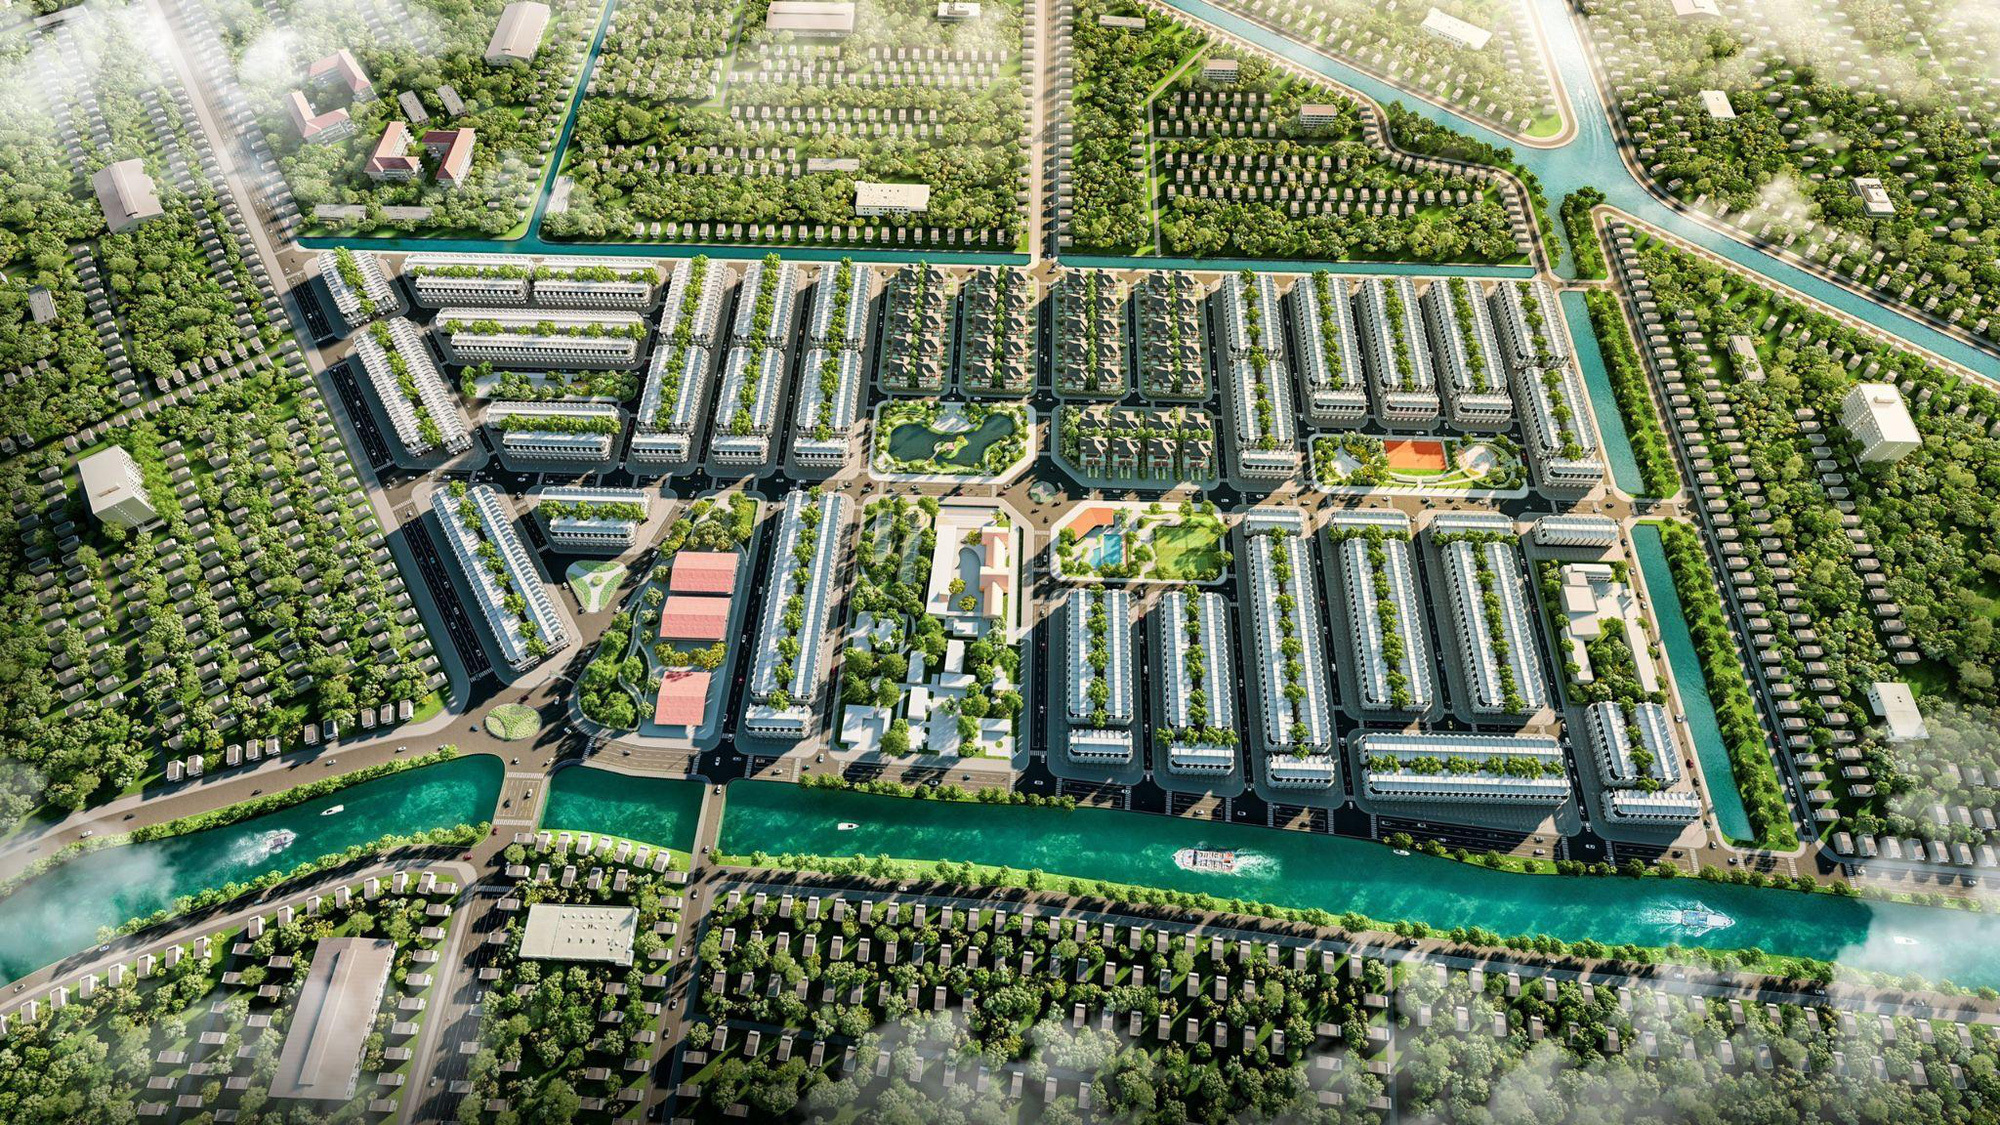 Ra mắt khu đô thị tích hợp mô hình all-in-one hàng đầu Hậu Giang - Ảnh 2.